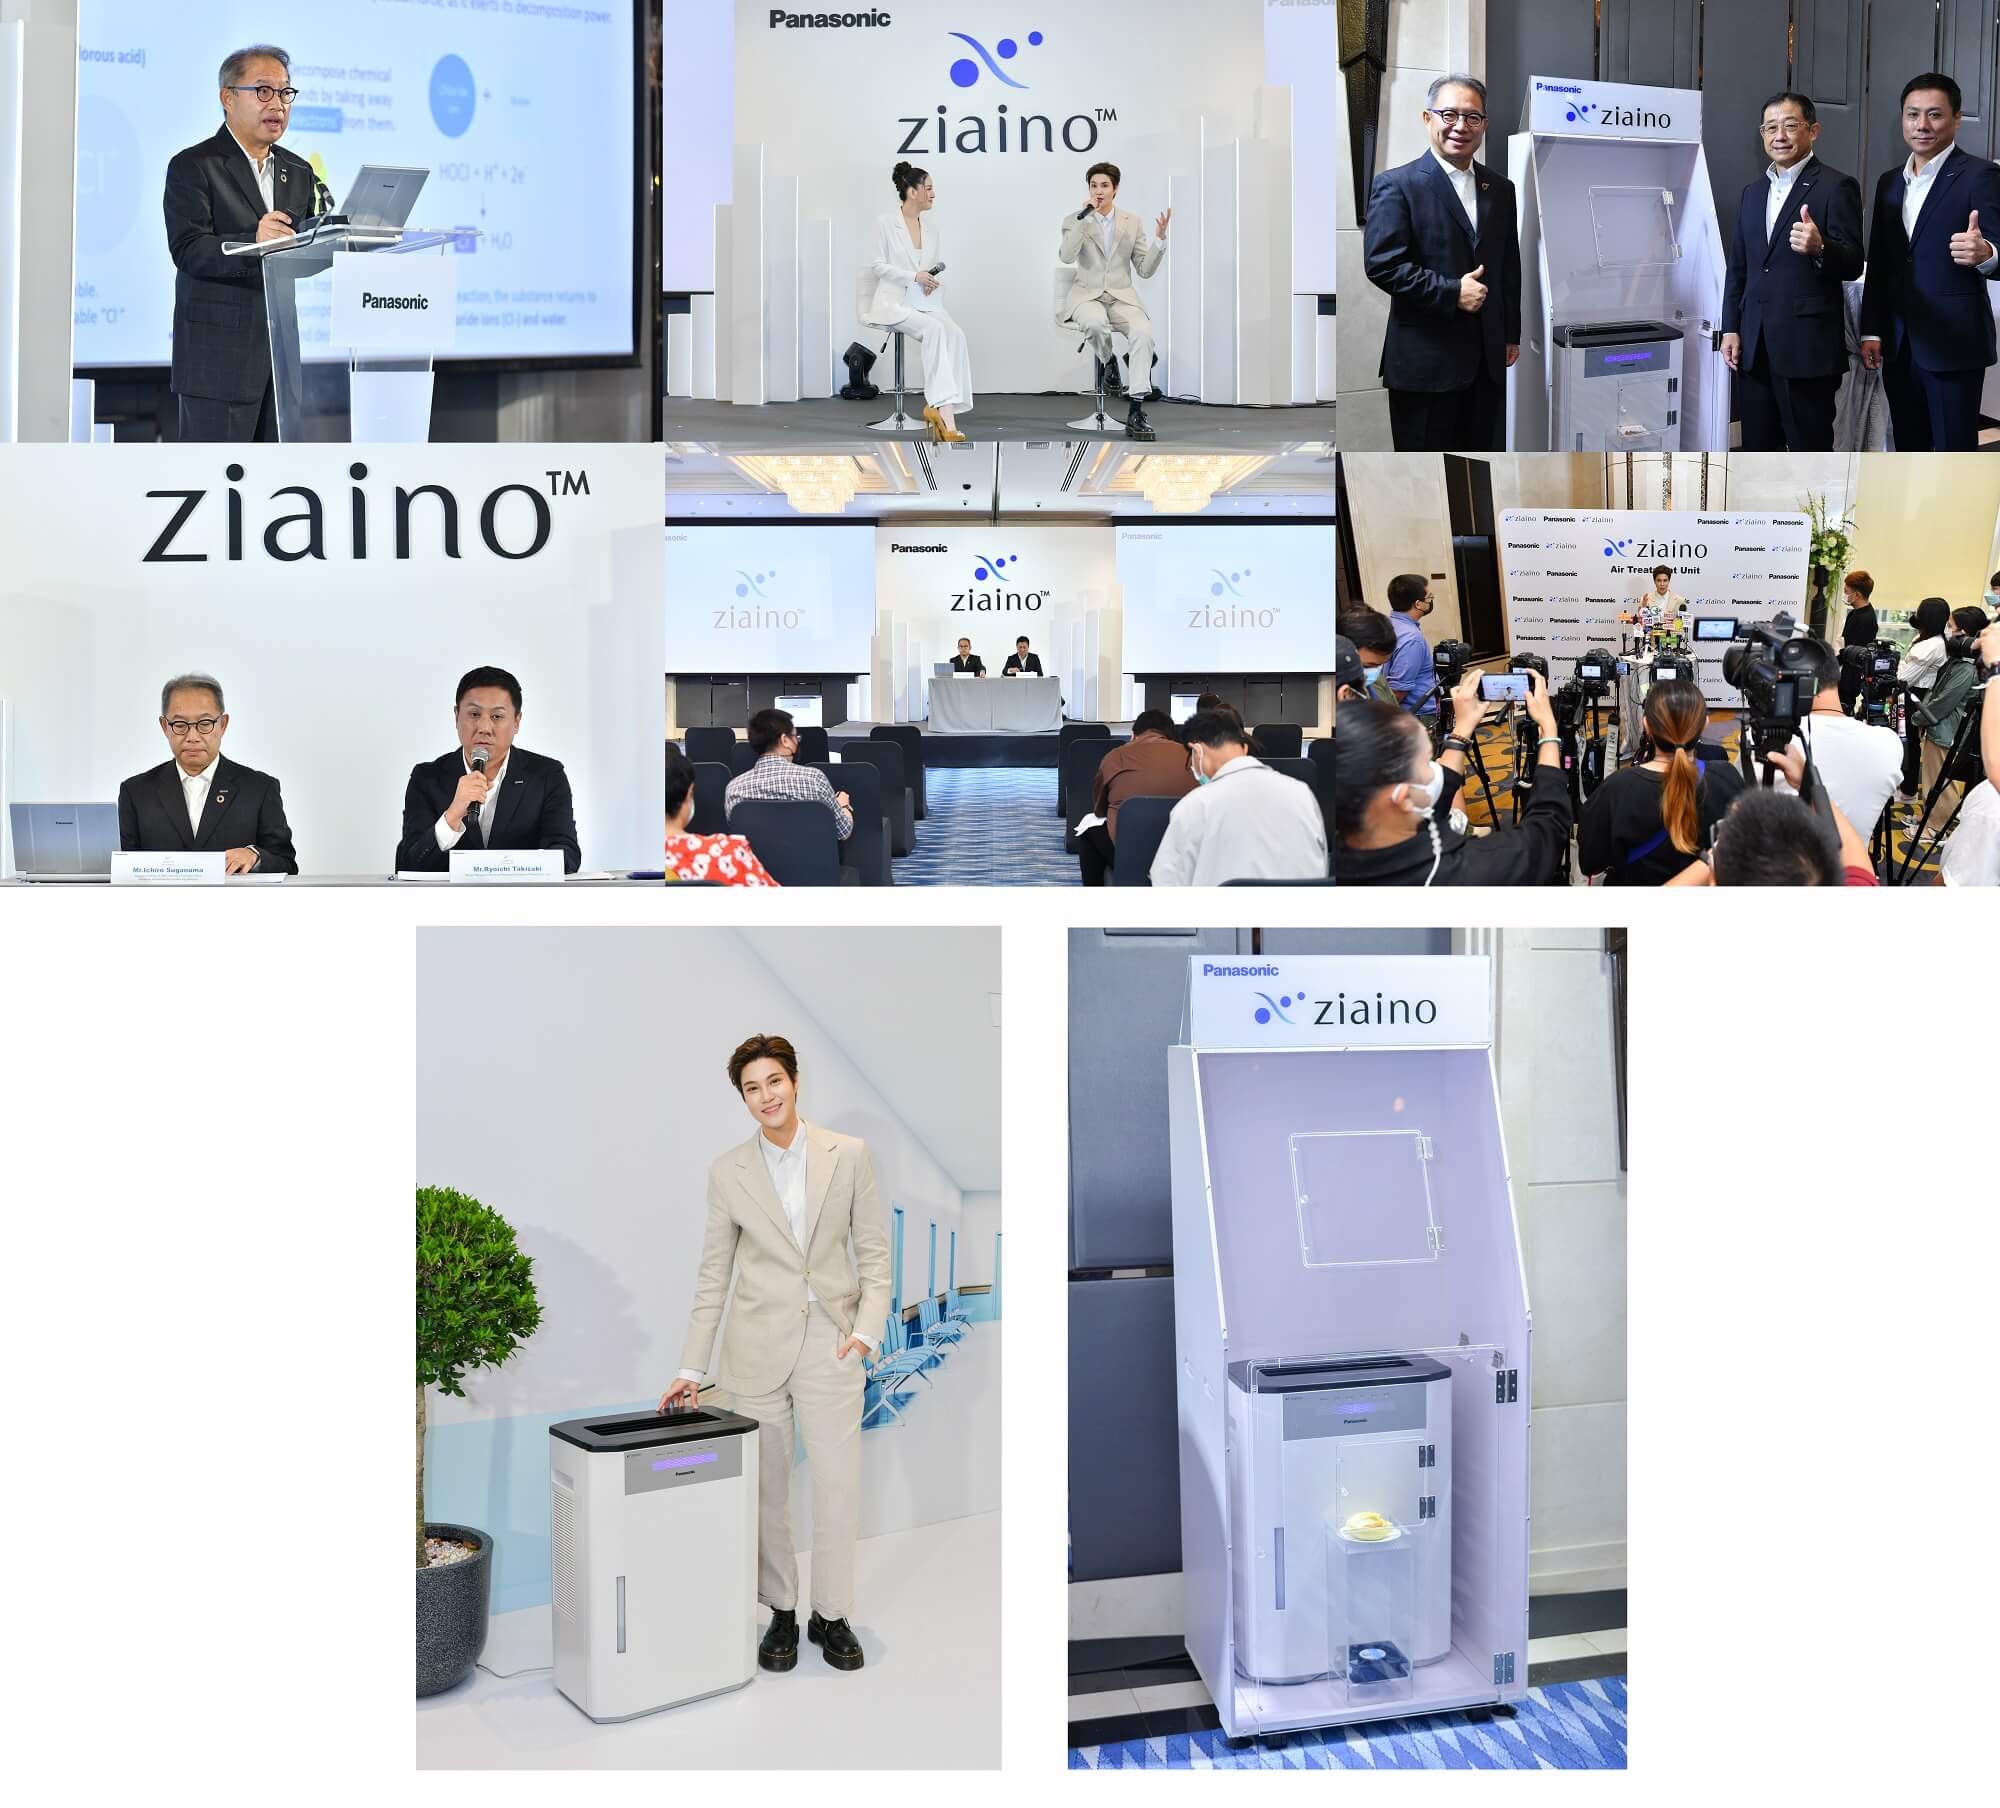 “พานาโซนิค” เปิดตัว Panasonic ziaino™ เครื่องยับยั้งเชื้อโรคในอากาศ ด้วยเทคโนโลยีใหม่ล่าสุด